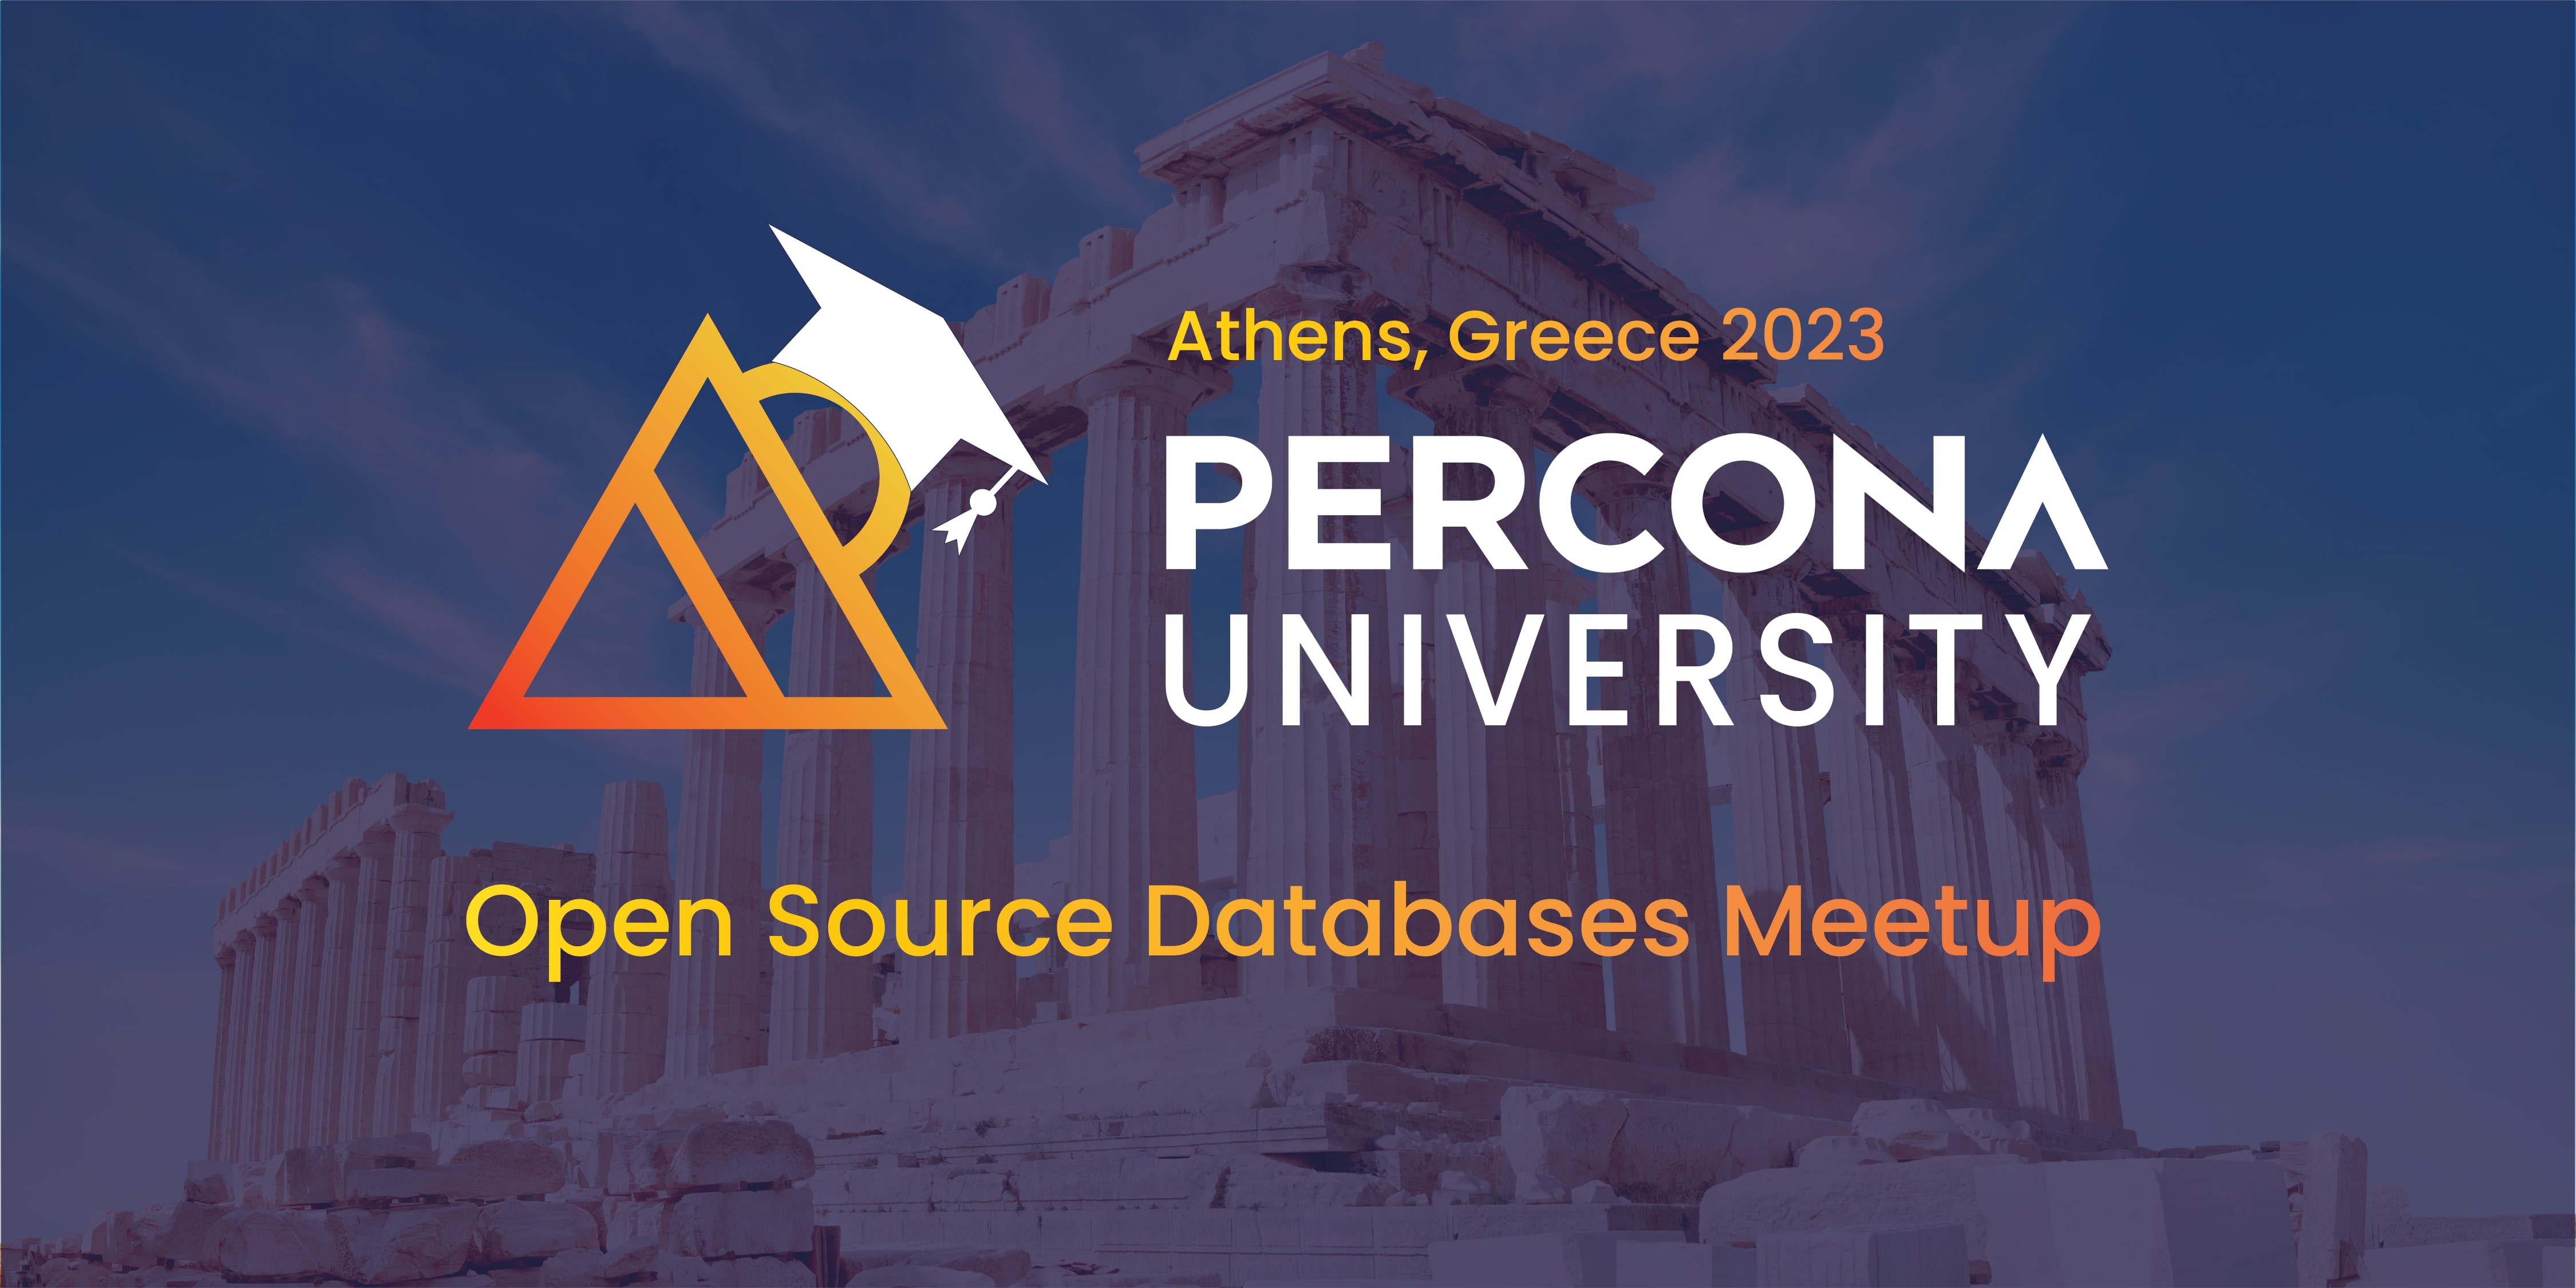 Percona University Athens